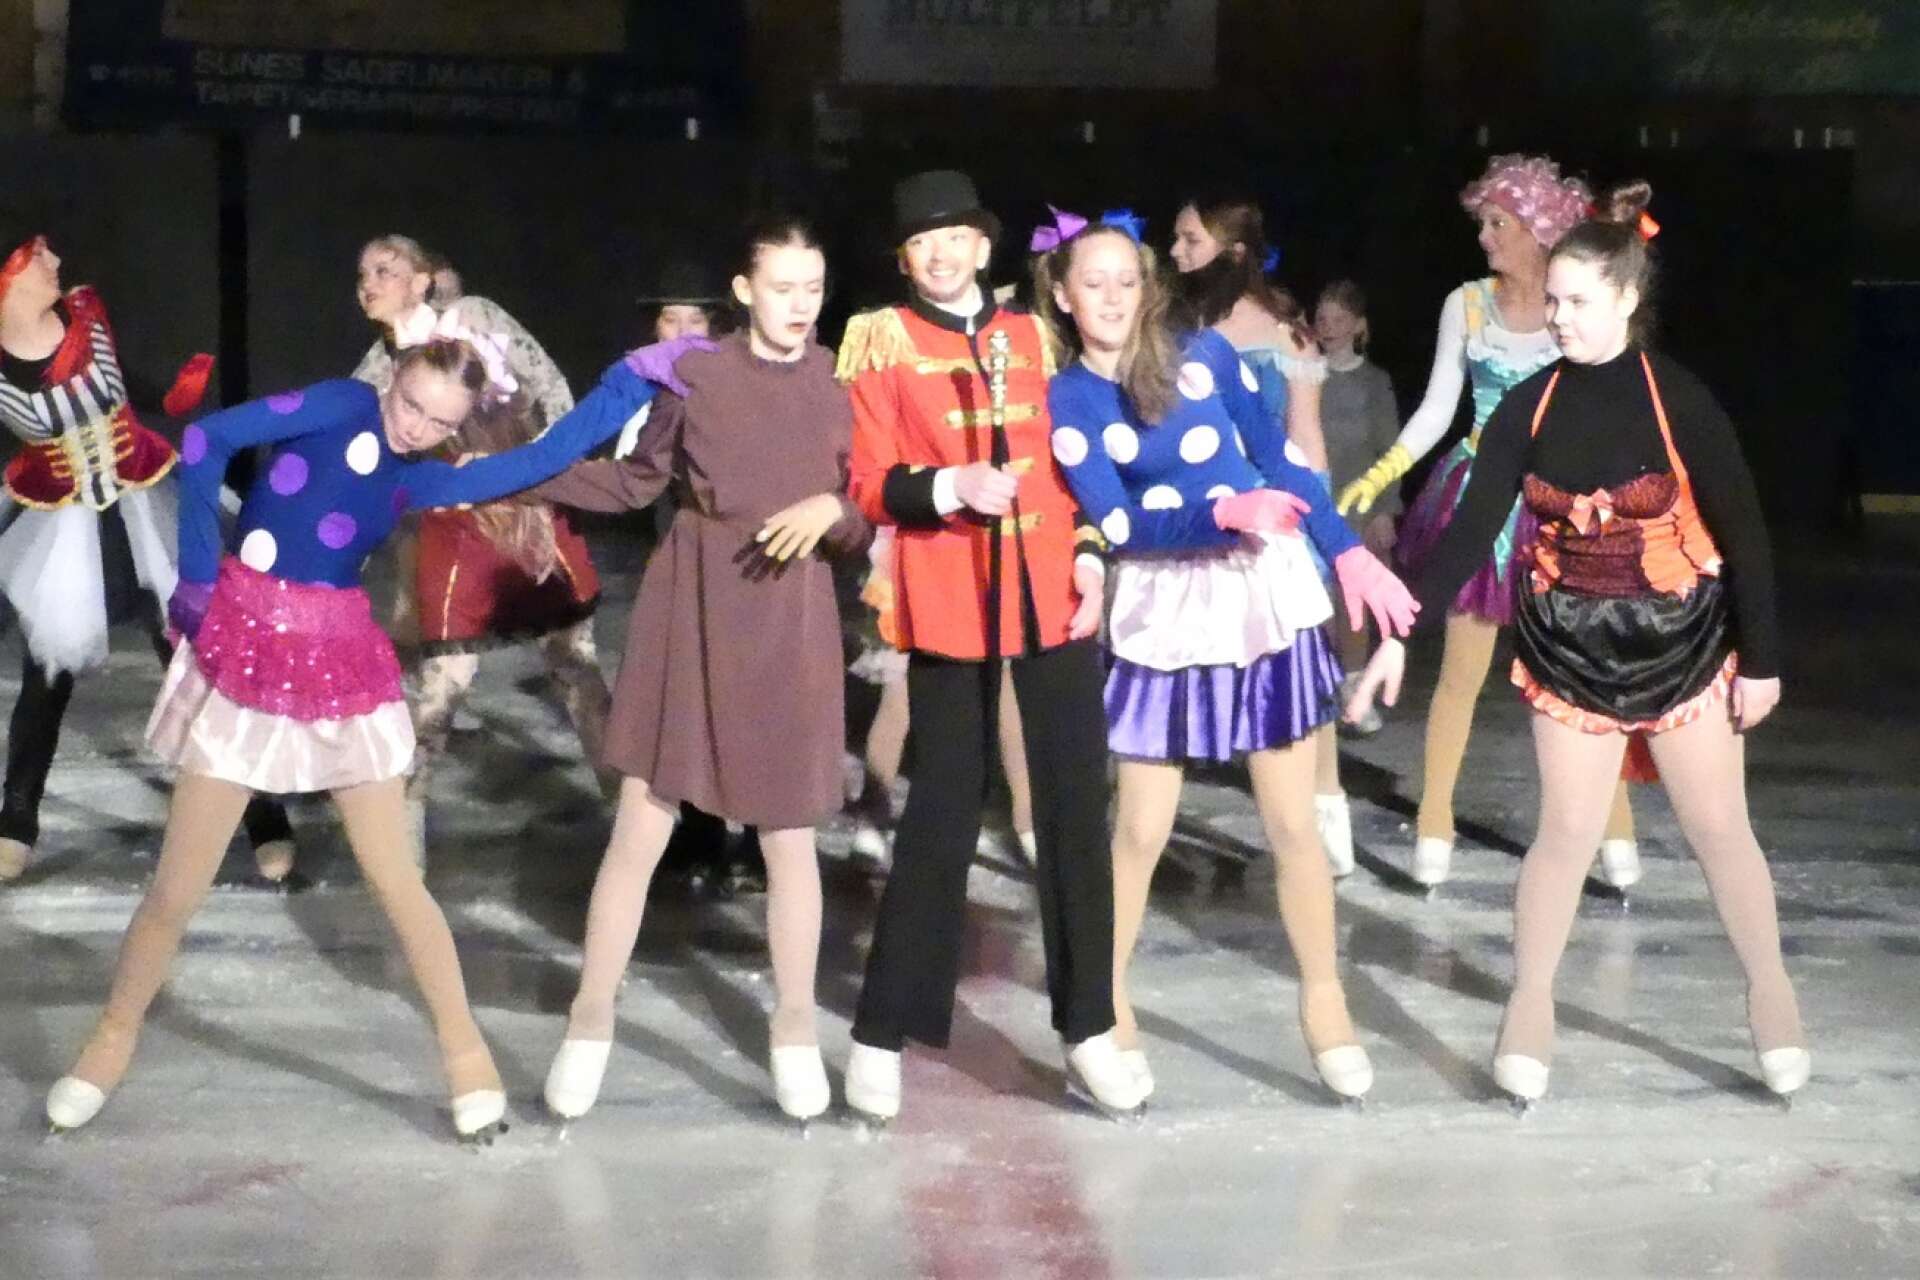 Säffle Konståkningsklubbs isshow The Greatest Show - on ice. En magisk och charmig föreställning med cirka 40 deltagare i Somashallen.